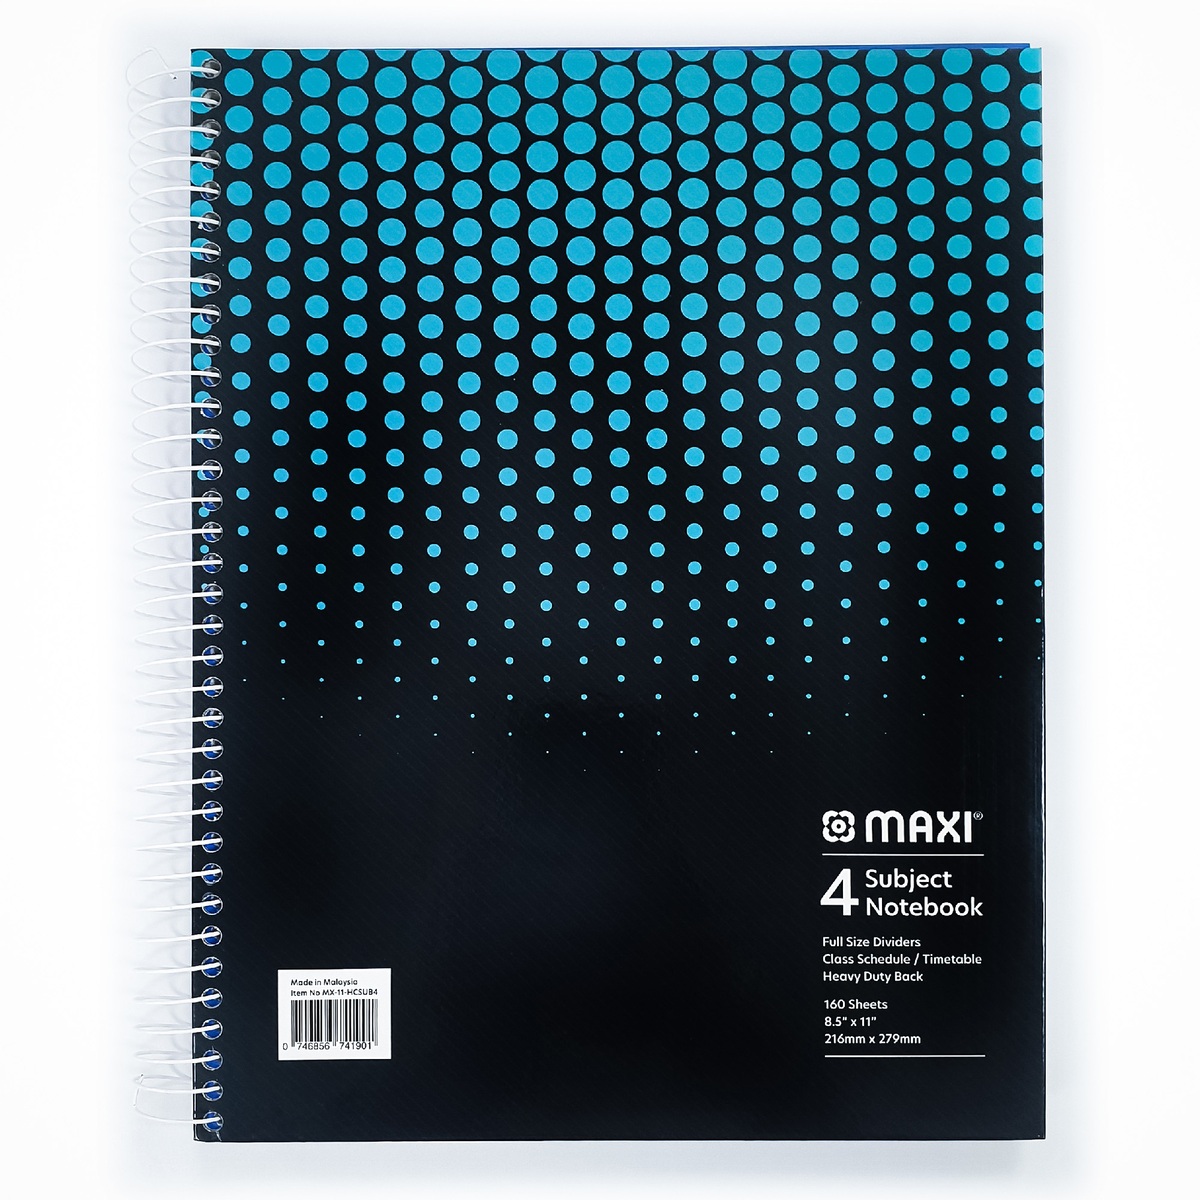 ماكسي مفكرة ورقية بسلك بغطاء صلب مقاس 4 موضوعات ، 11 بوصة × 8.5 بوصة ، 160 ورقة ، الوان متنوعة ، MX-11-HCSUB4